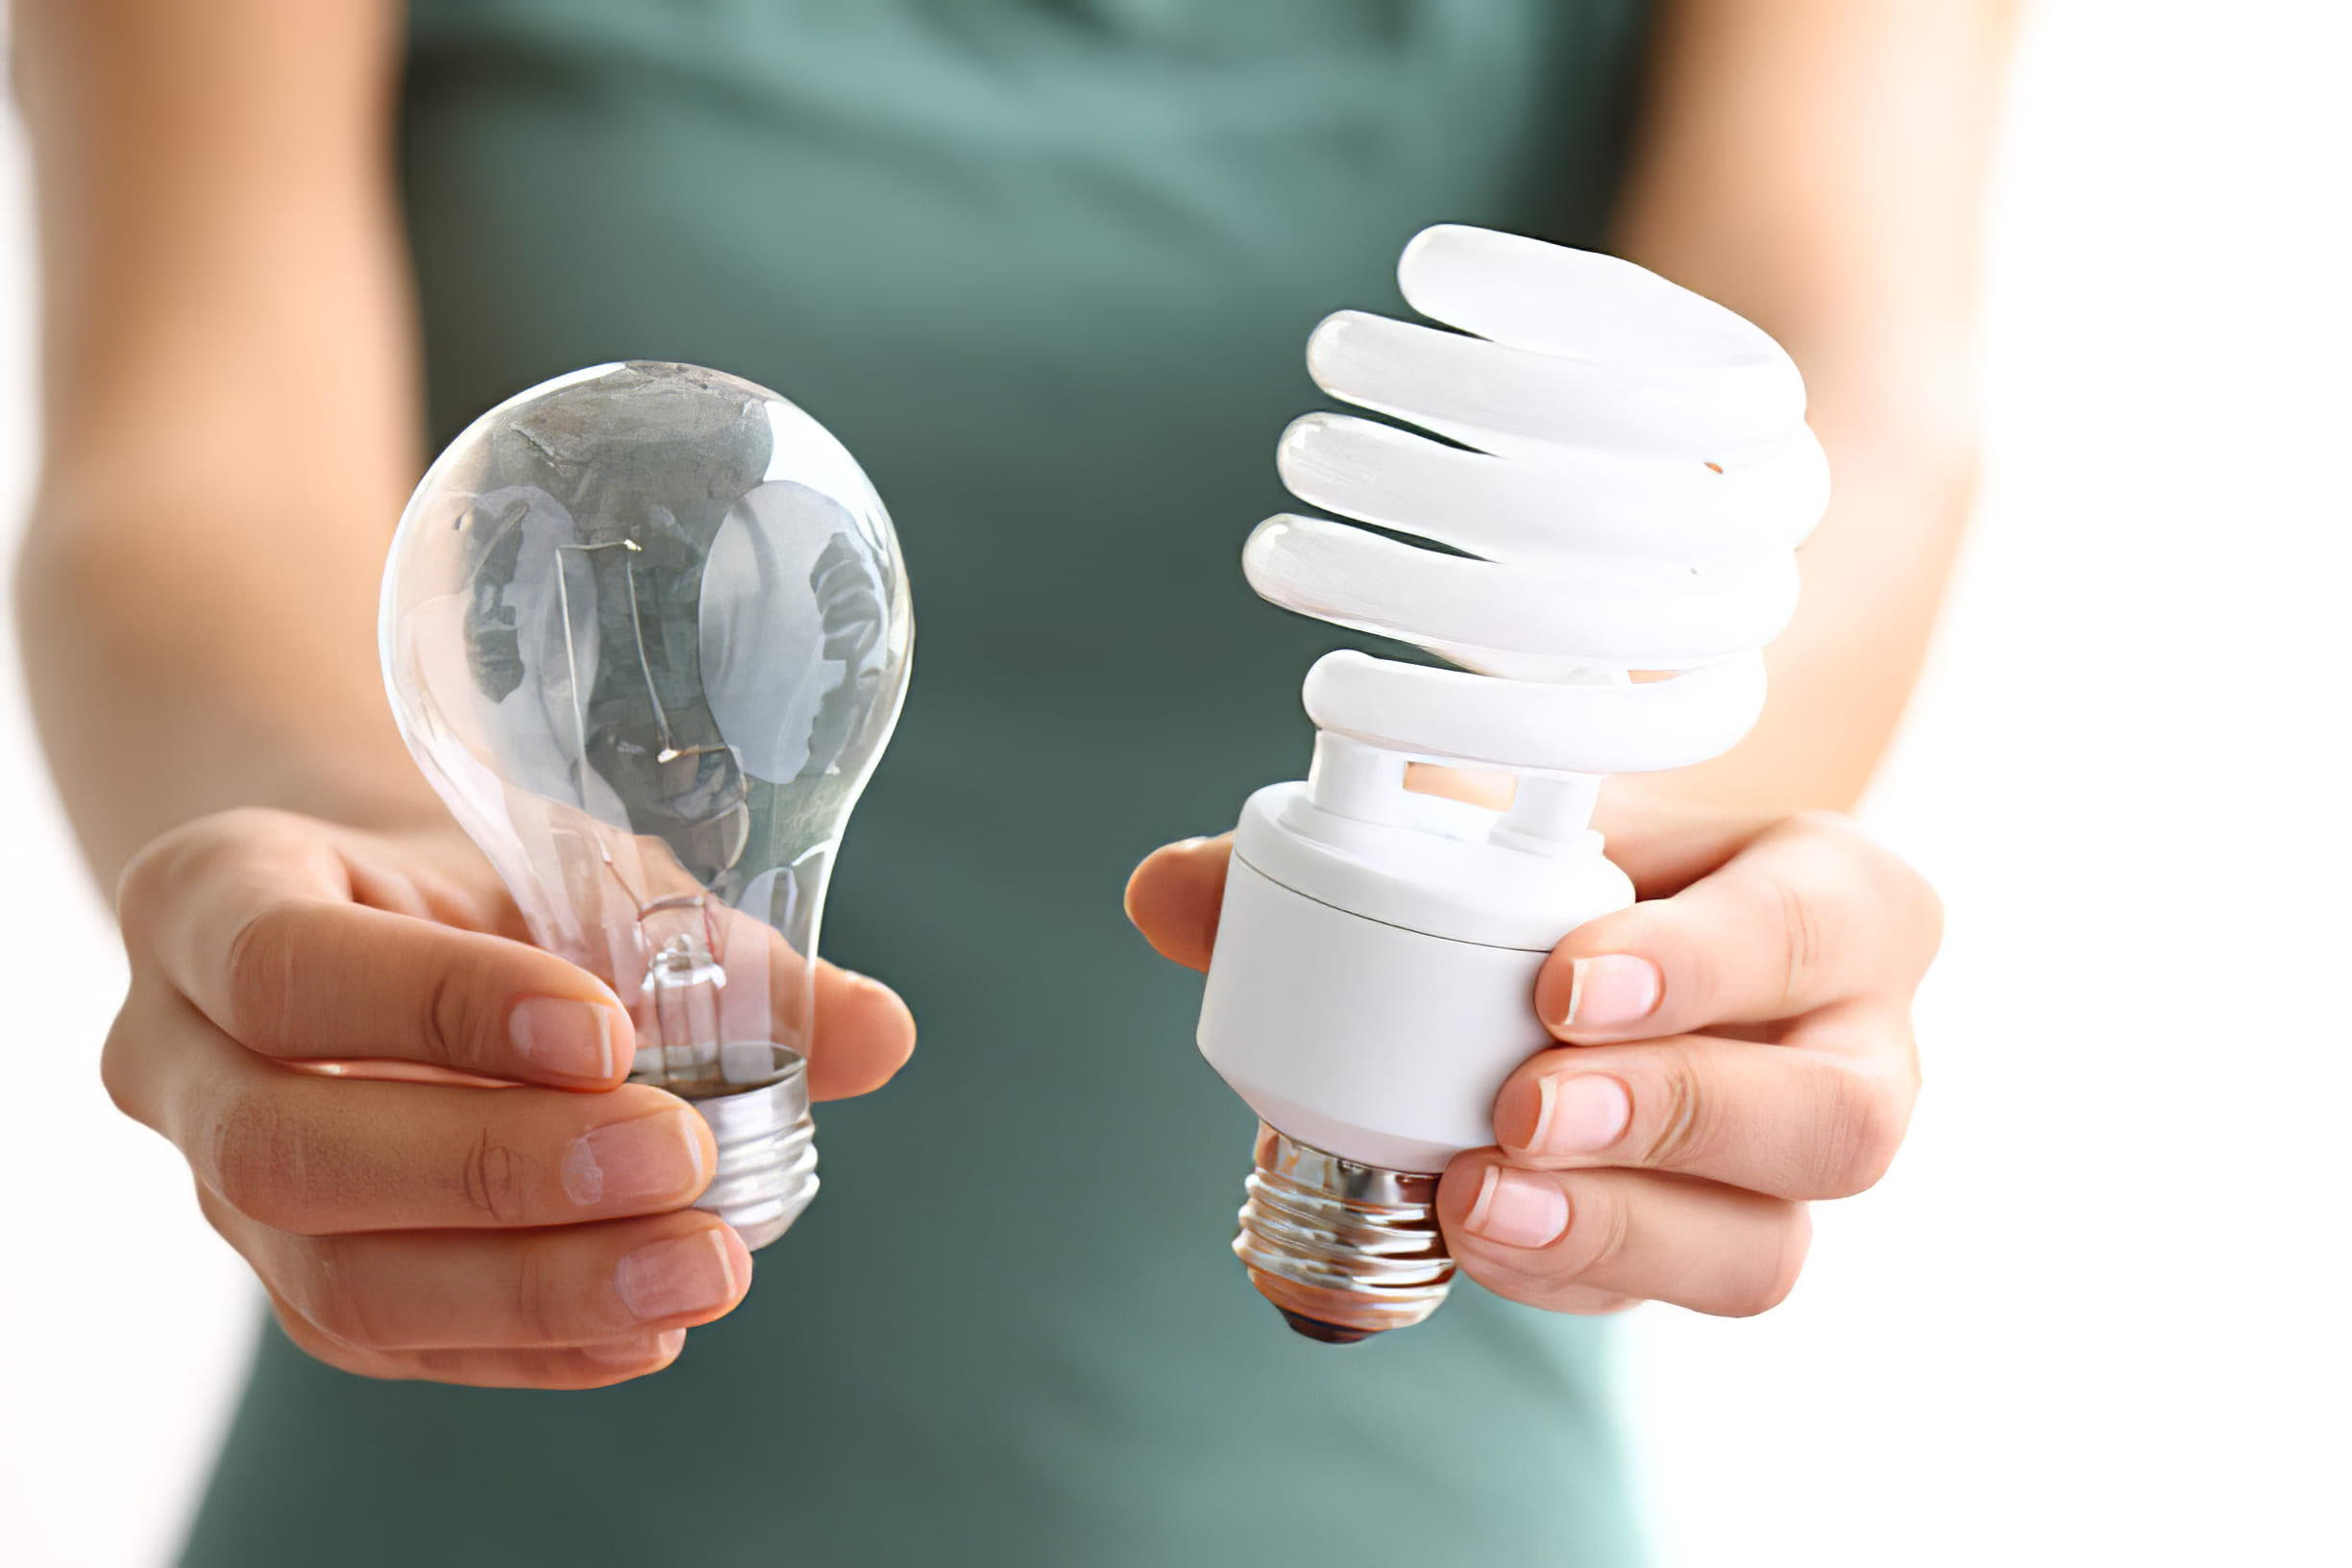 ПАМЯТКА: разбилась энергосберегающая лампа !!!!!!!!!! — 2 ответов | форум Babyblog